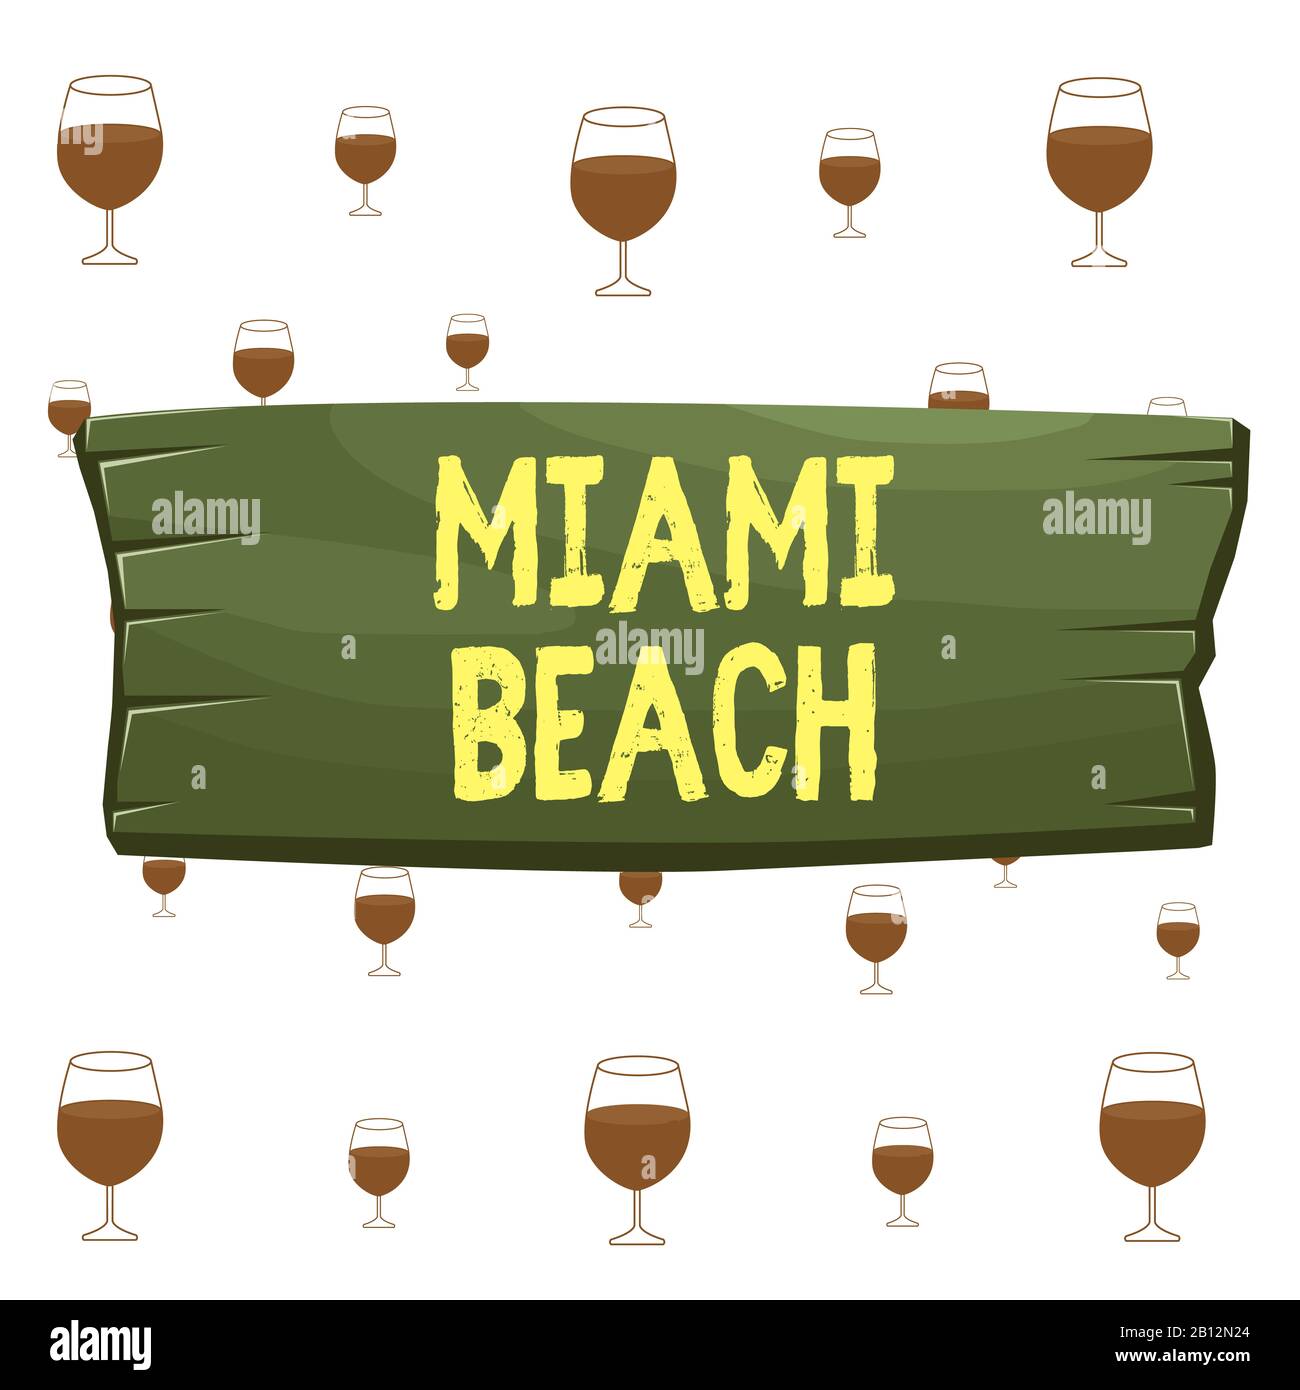 Textschild mit Miami Beach. Geschäftsfoto, auf dem die Küstenstadt MiamiDade County aus Florida Plank mit Holzbrett, leeres Rechteck sha gezeigt wird Stockfoto